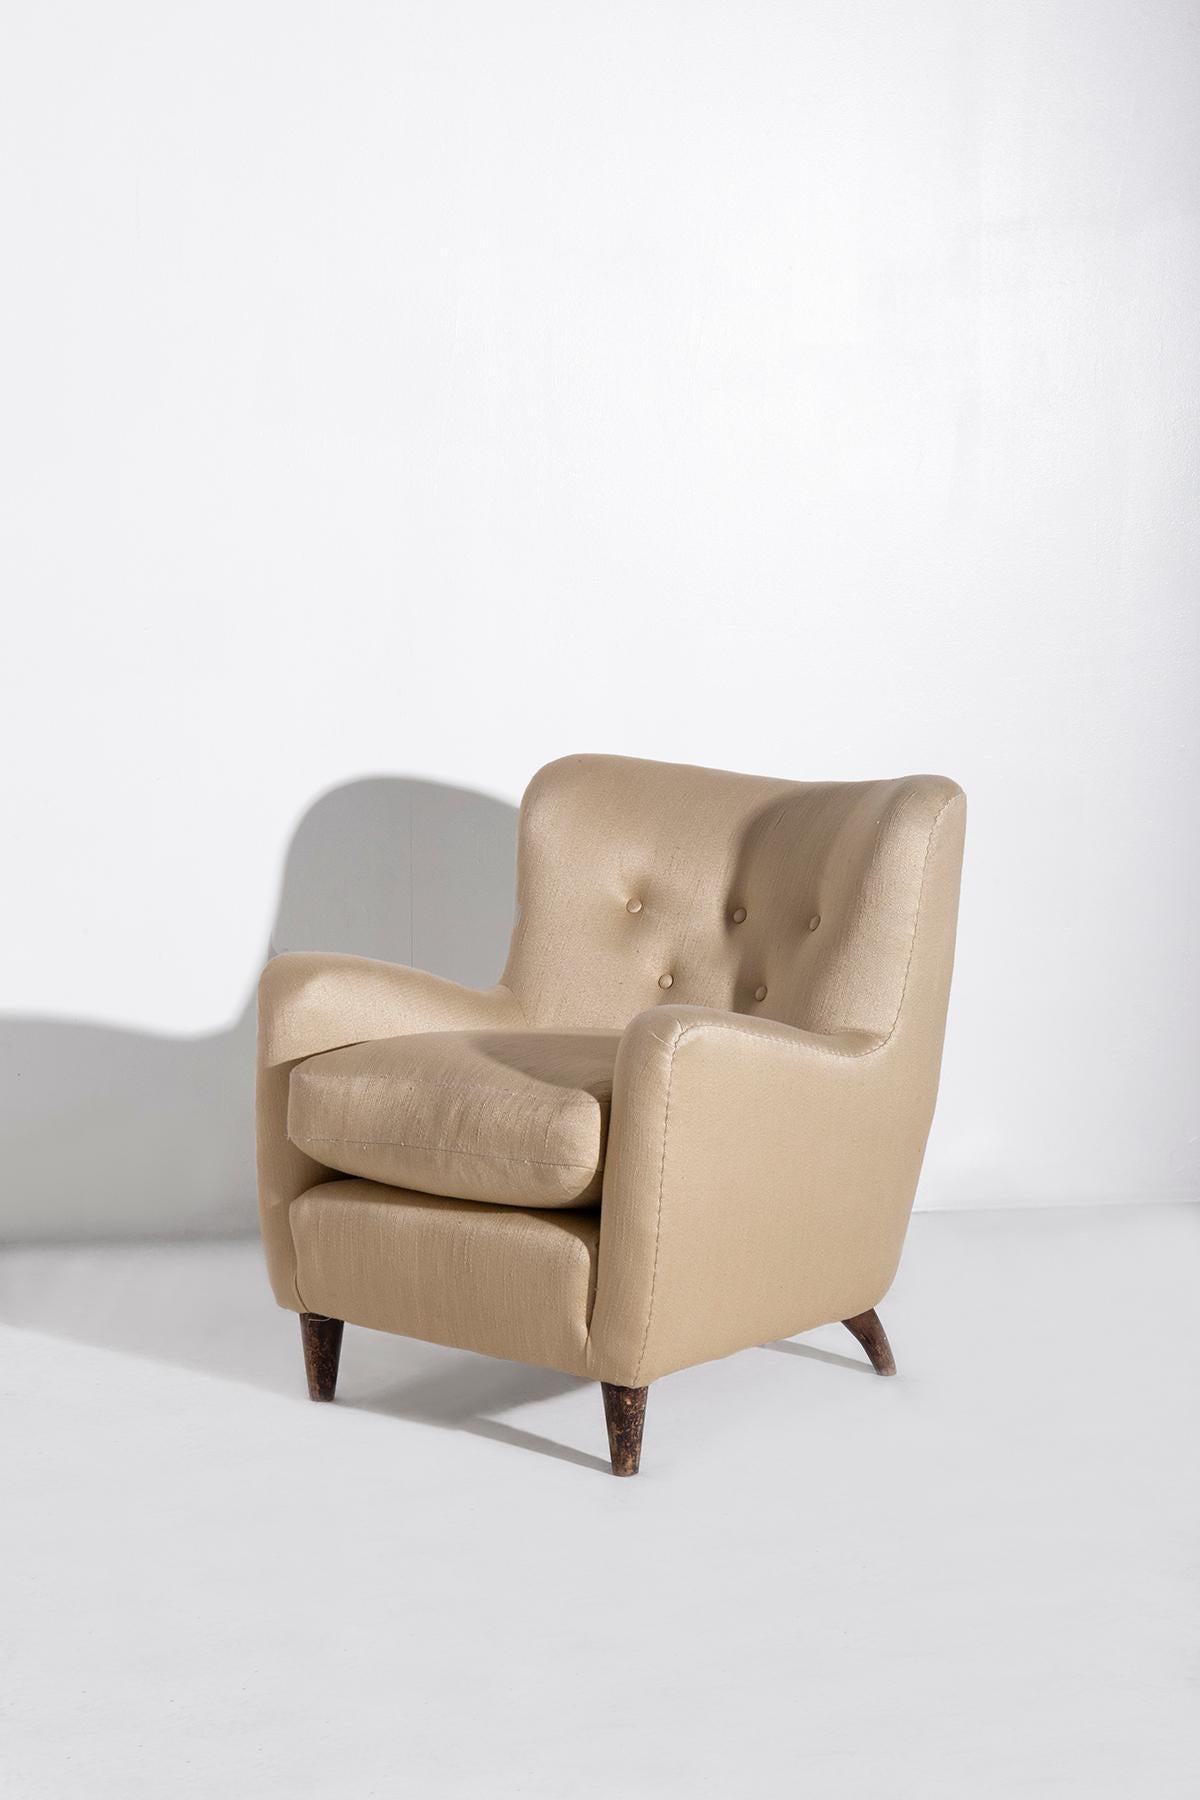 Entrez dans un monde où l'essence du design italien des années 1940 occupe le devant de la scène, incarnée par une rare paire de fauteuils conçus par le légendaire Giò Ponti pour un projet naval. Ces pièces exceptionnelles faisaient partie du